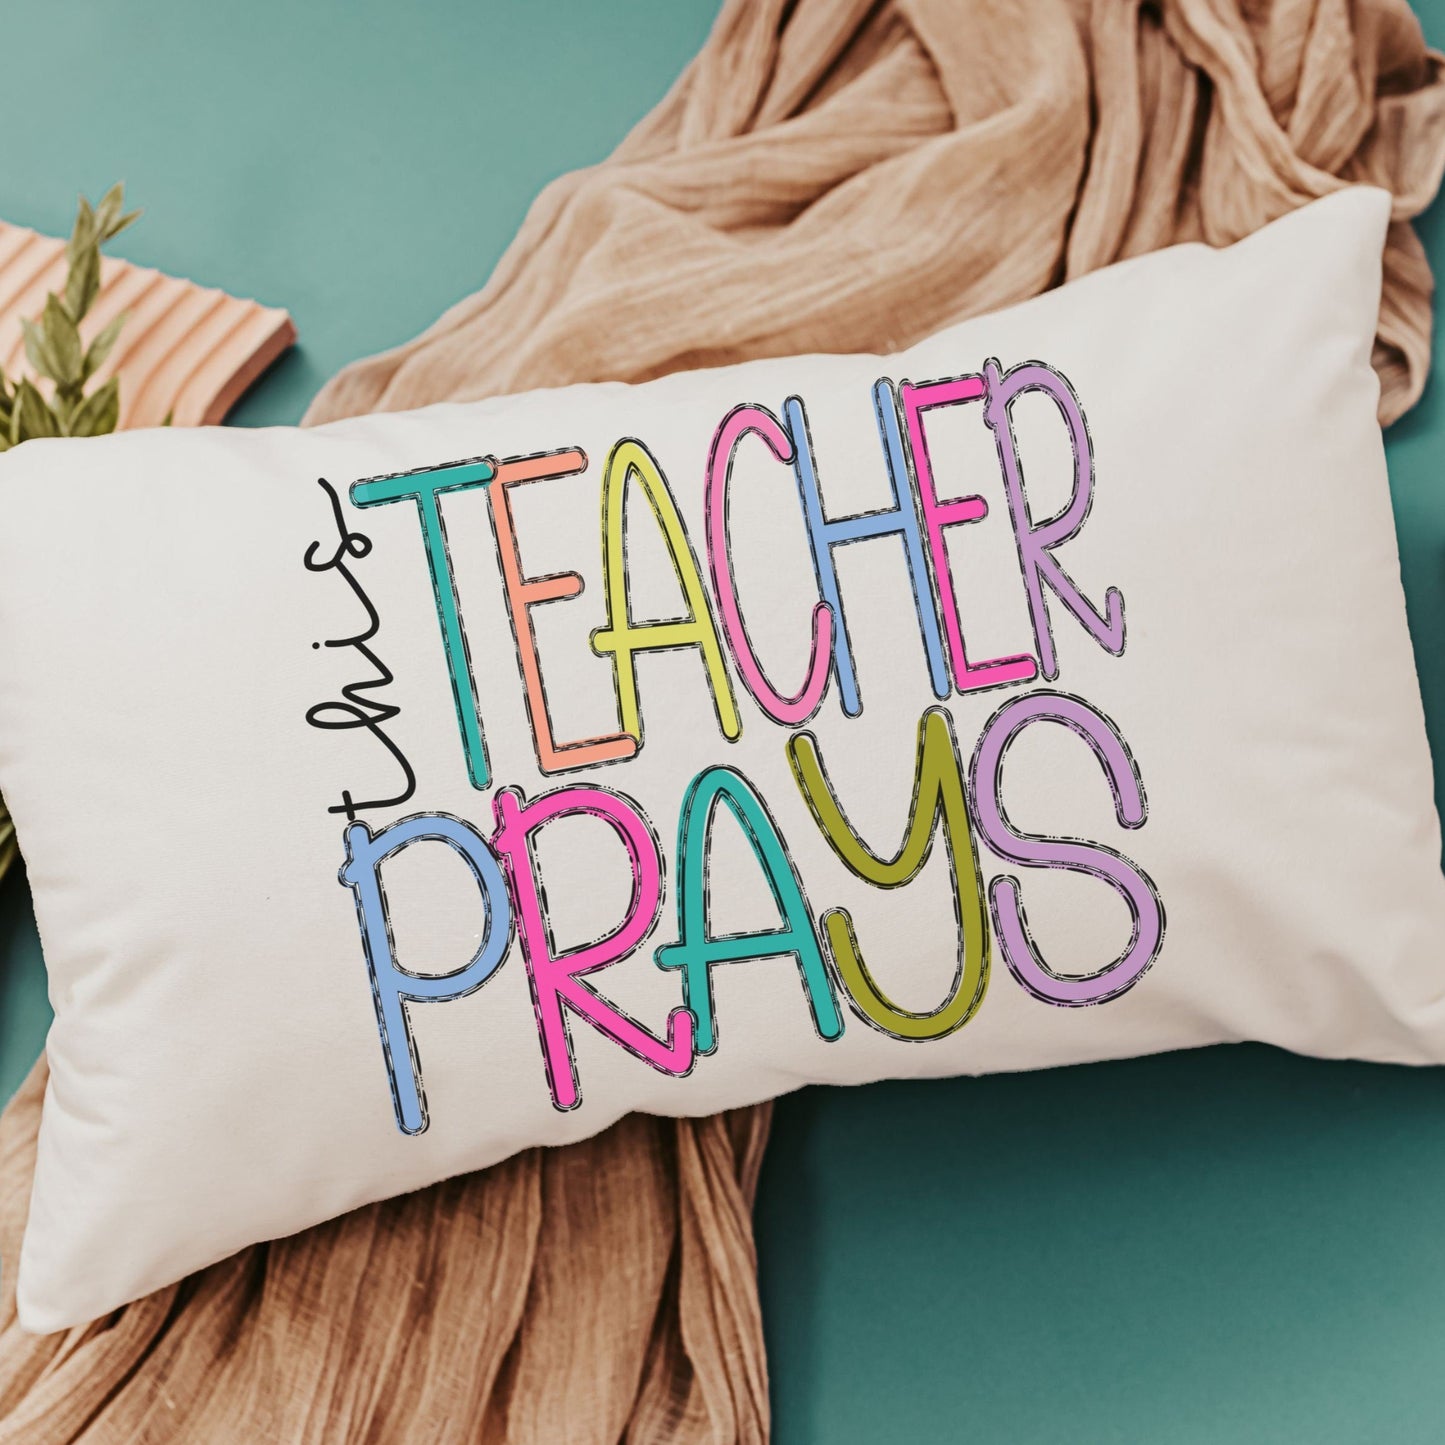 This teacher prays lumbar throw pillow